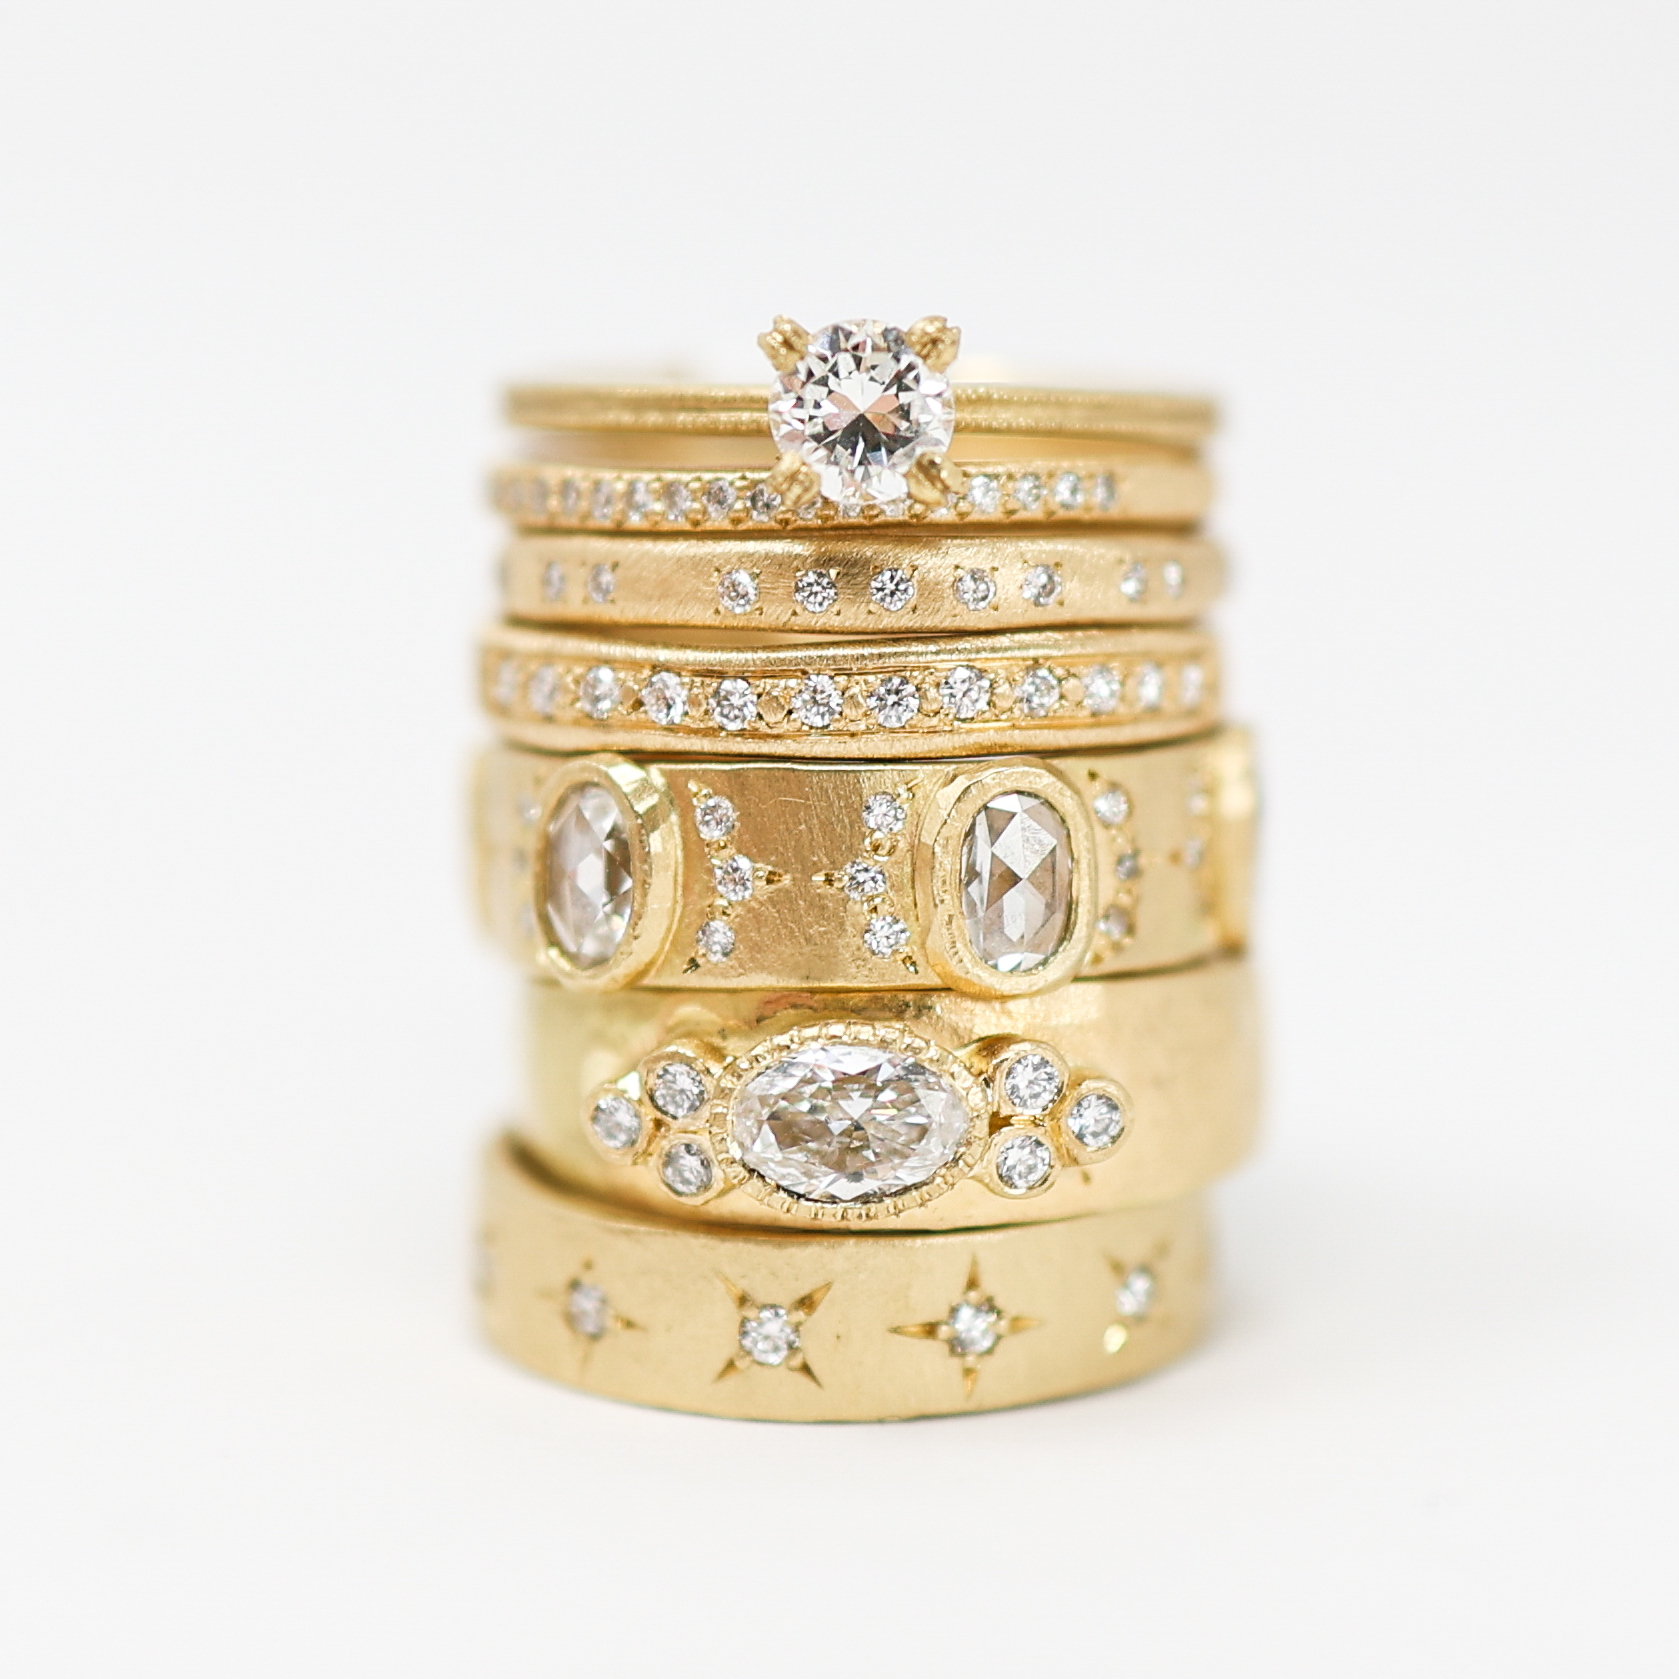 Jennifer Dawes engagement rings, wedding bands, yasuko azuma rings